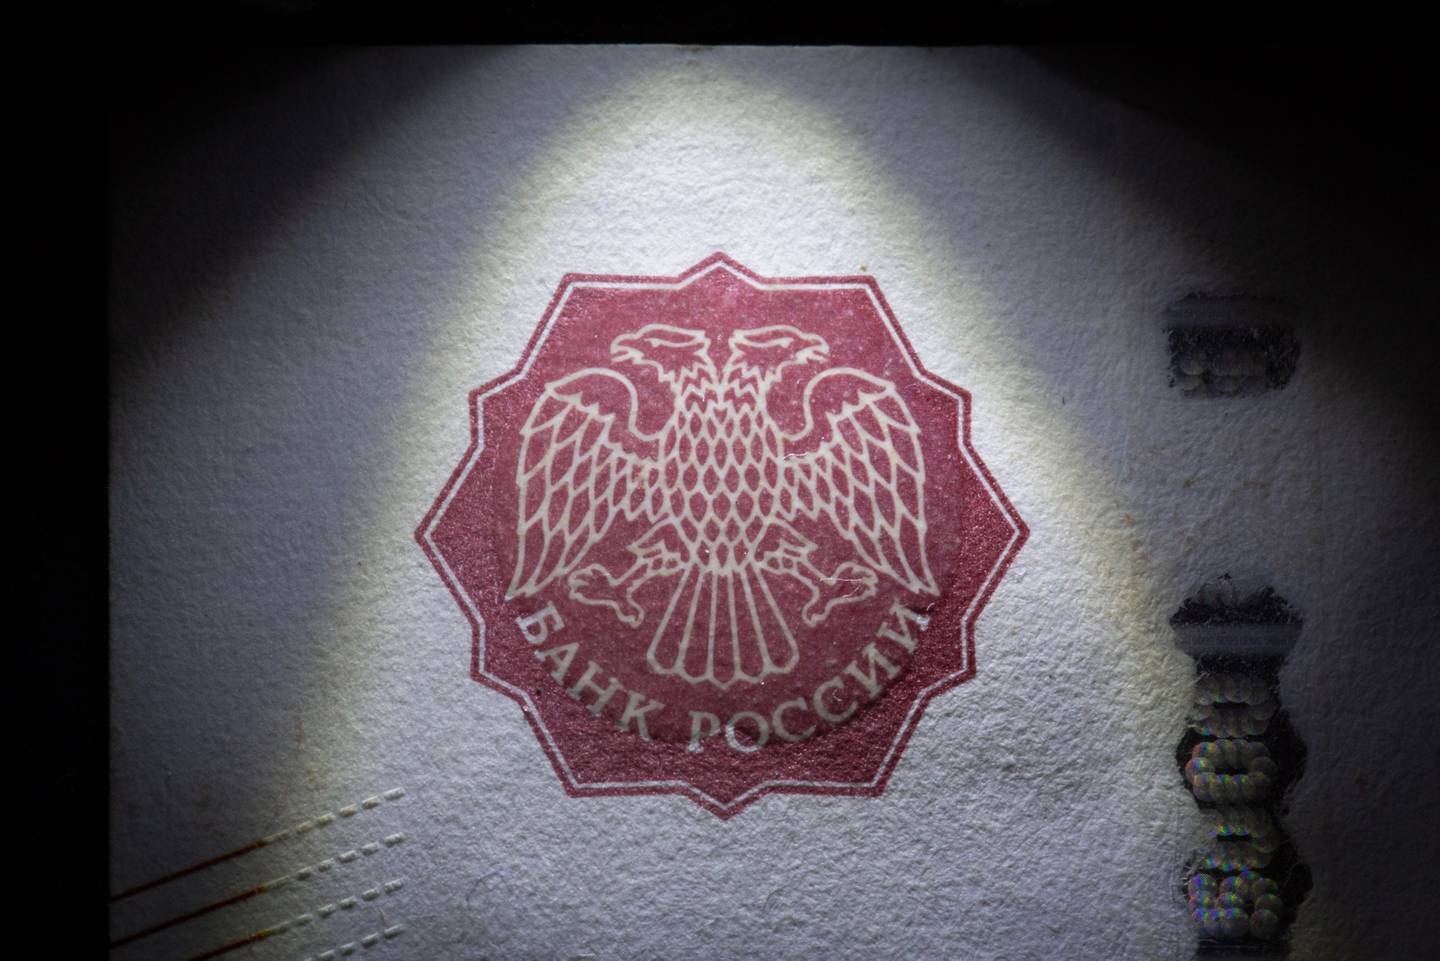 El escudo de armas del águila bicéfala imperial rusa, el emblema del banco central de Rusia, se encuentra en un billete de rublo en esta fotografía organizada en Moscú, Rusia.